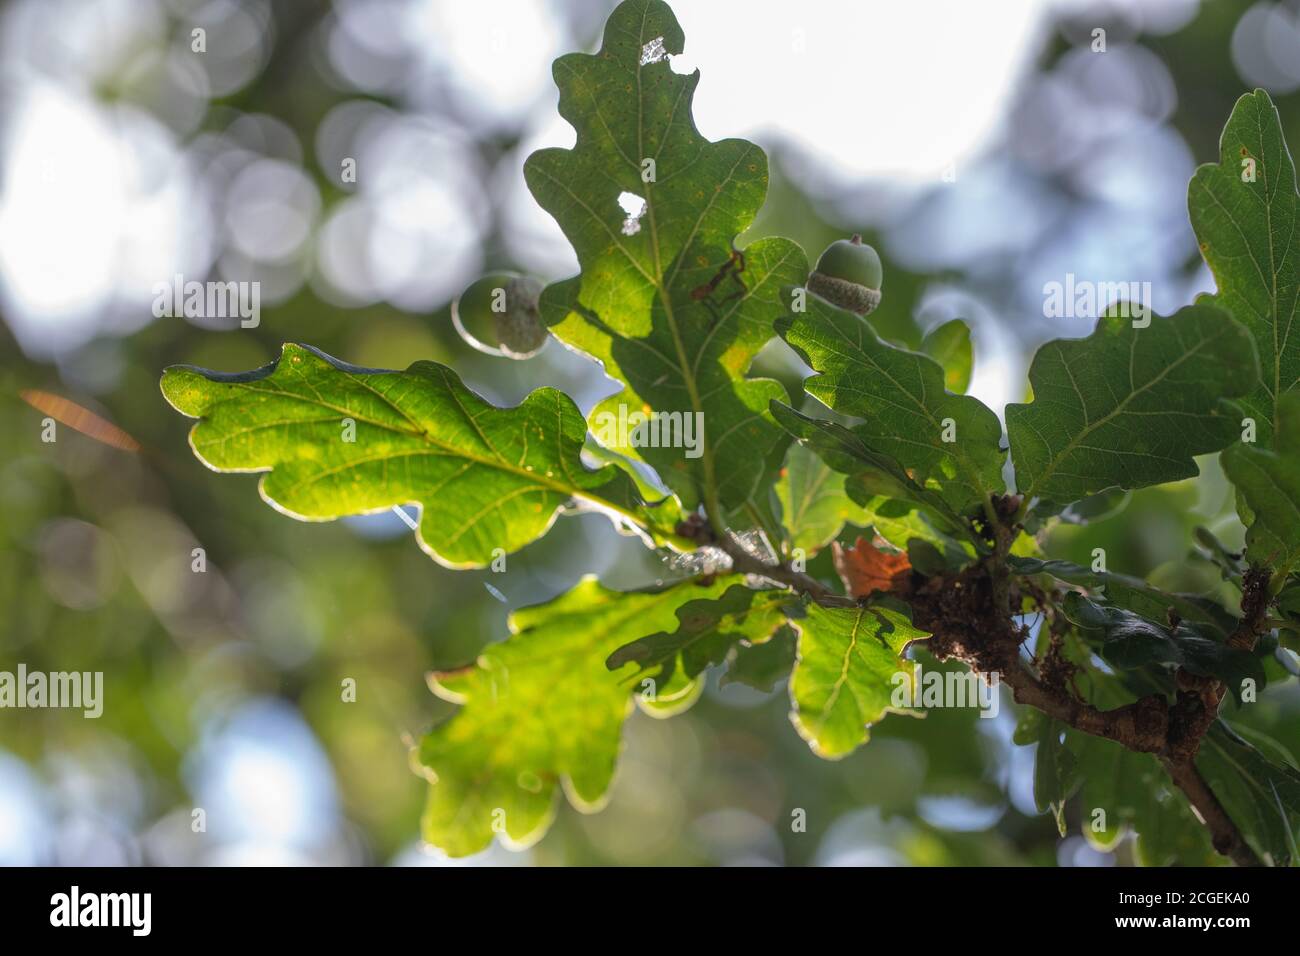 Blätter, Laub und Eicheln. Früchte der englischen Eiche (Quercus robur). Von unten betrachtet, durch Äste zum Himmel aufblickend, contre jour. Stockfoto